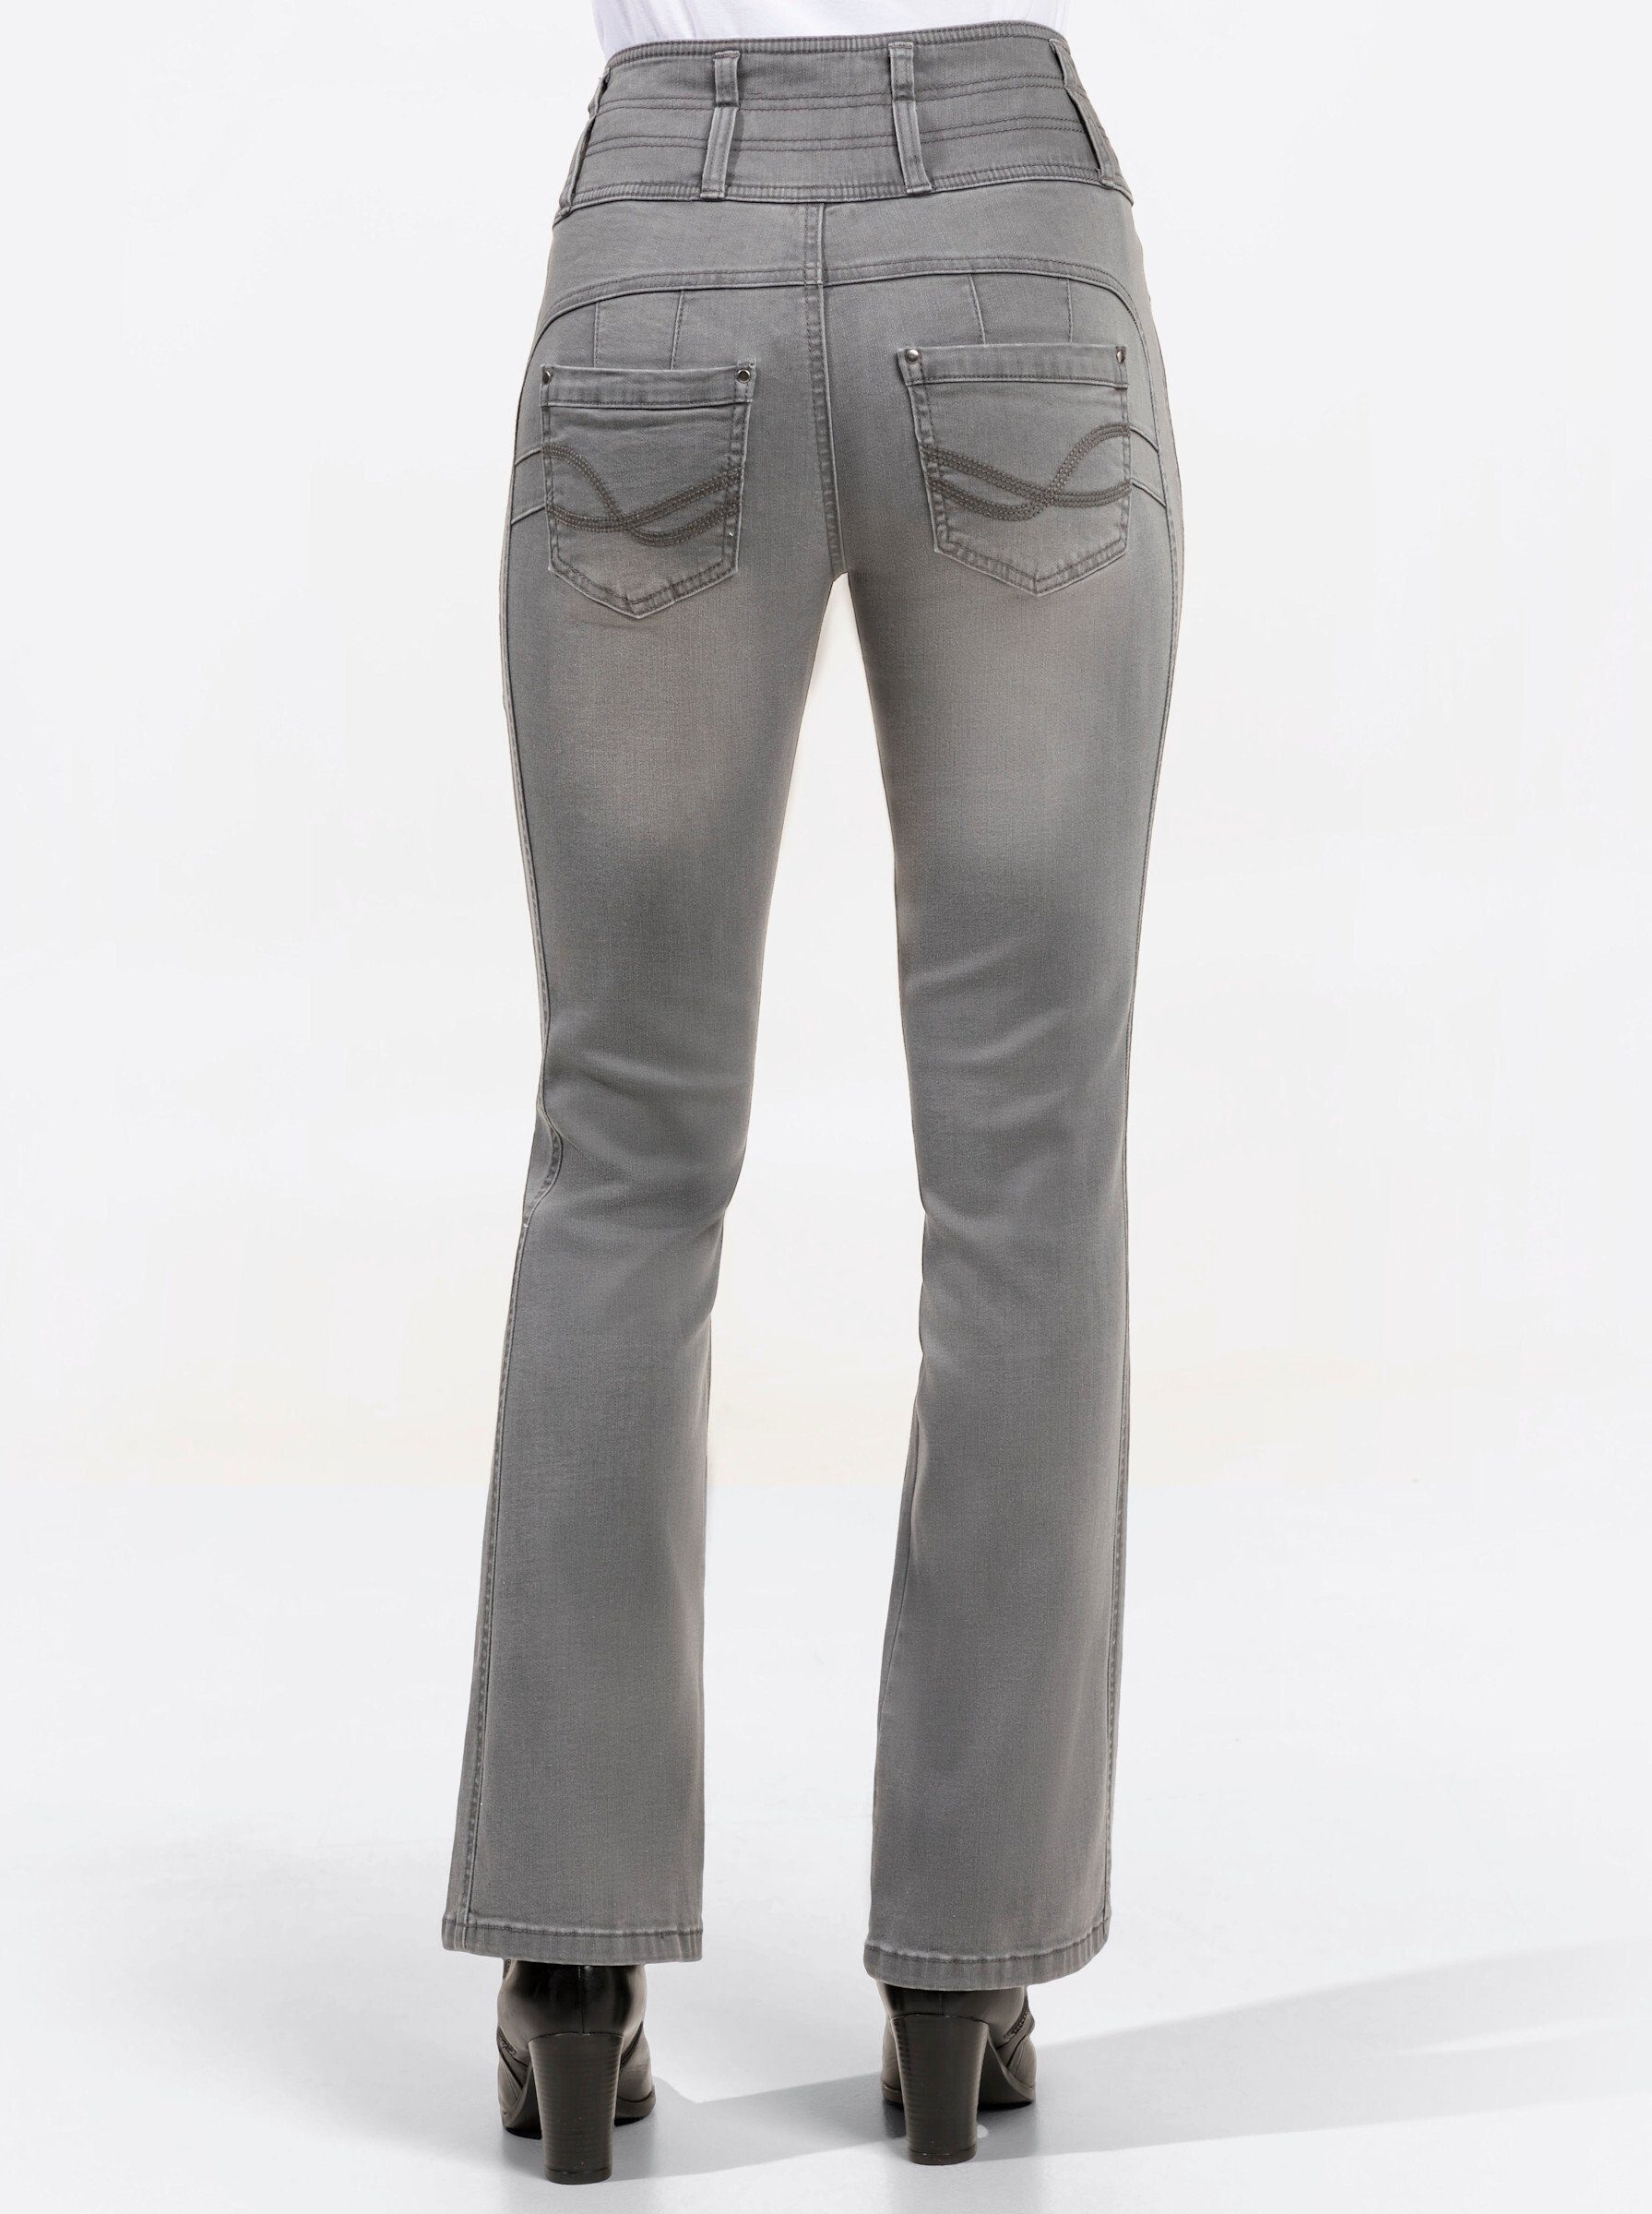 grey-denim WITT Bequeme light Jeans WEIDEN